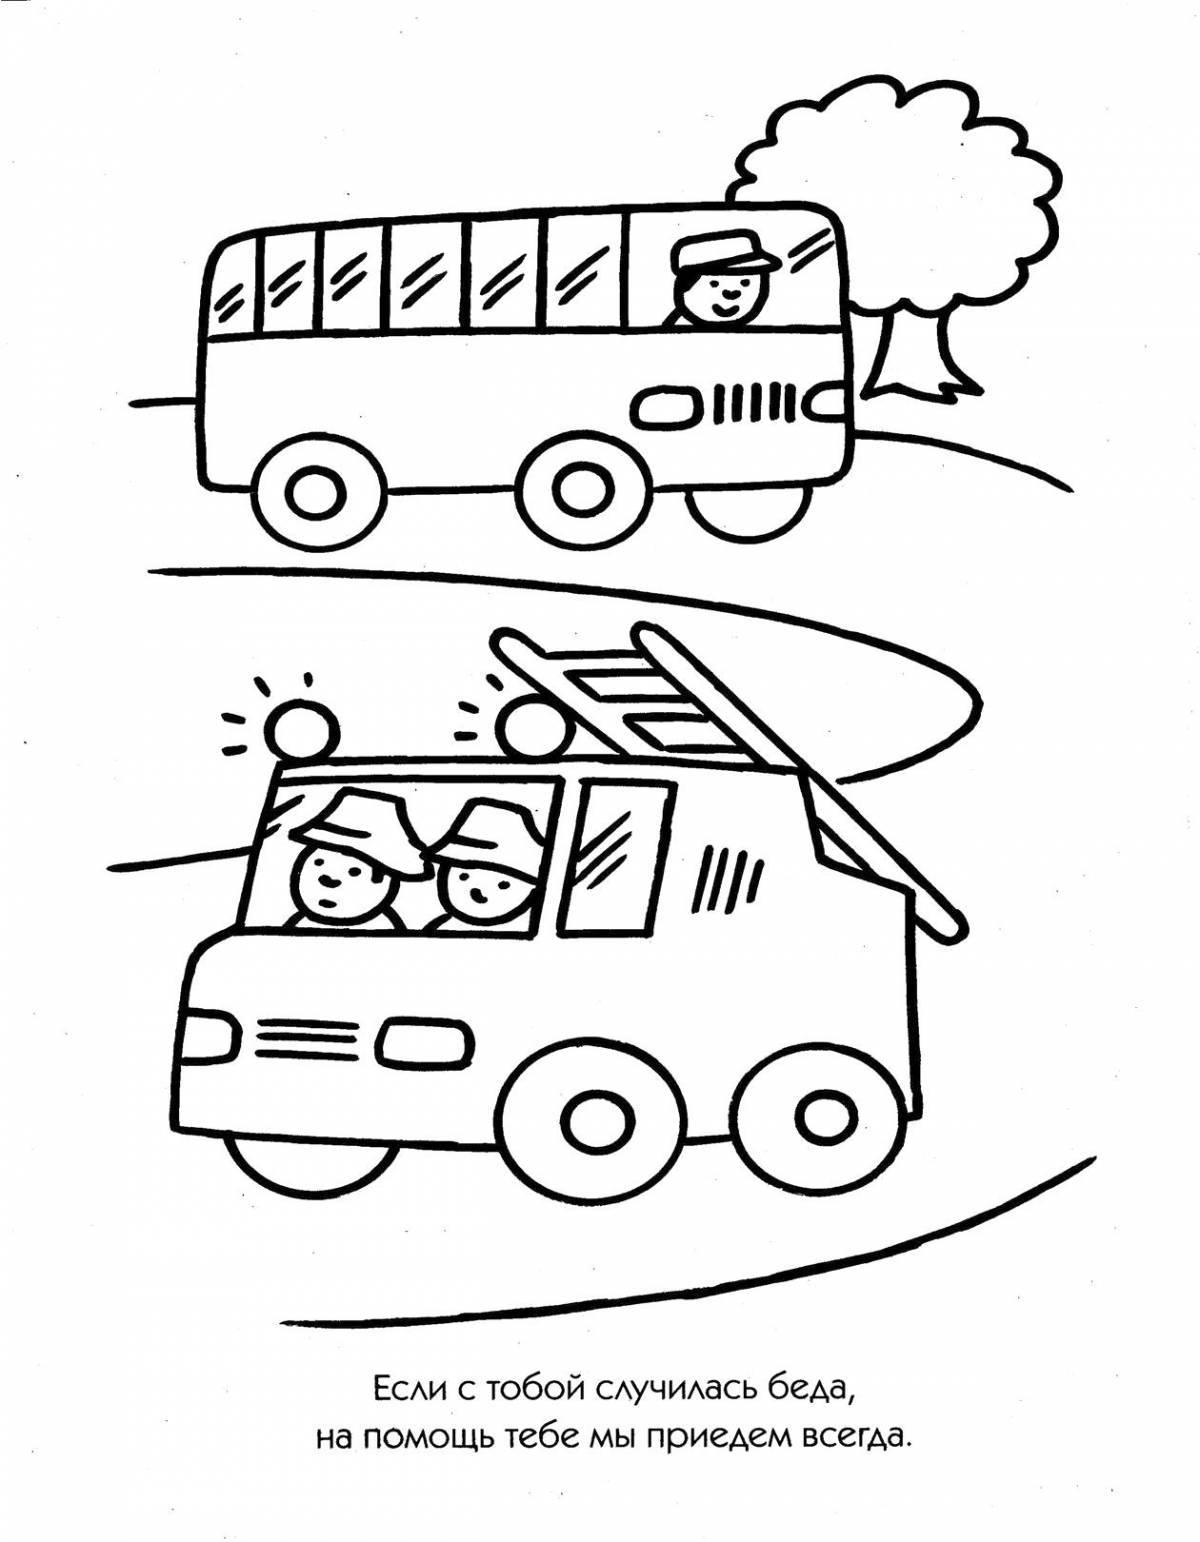 Transport for children #1